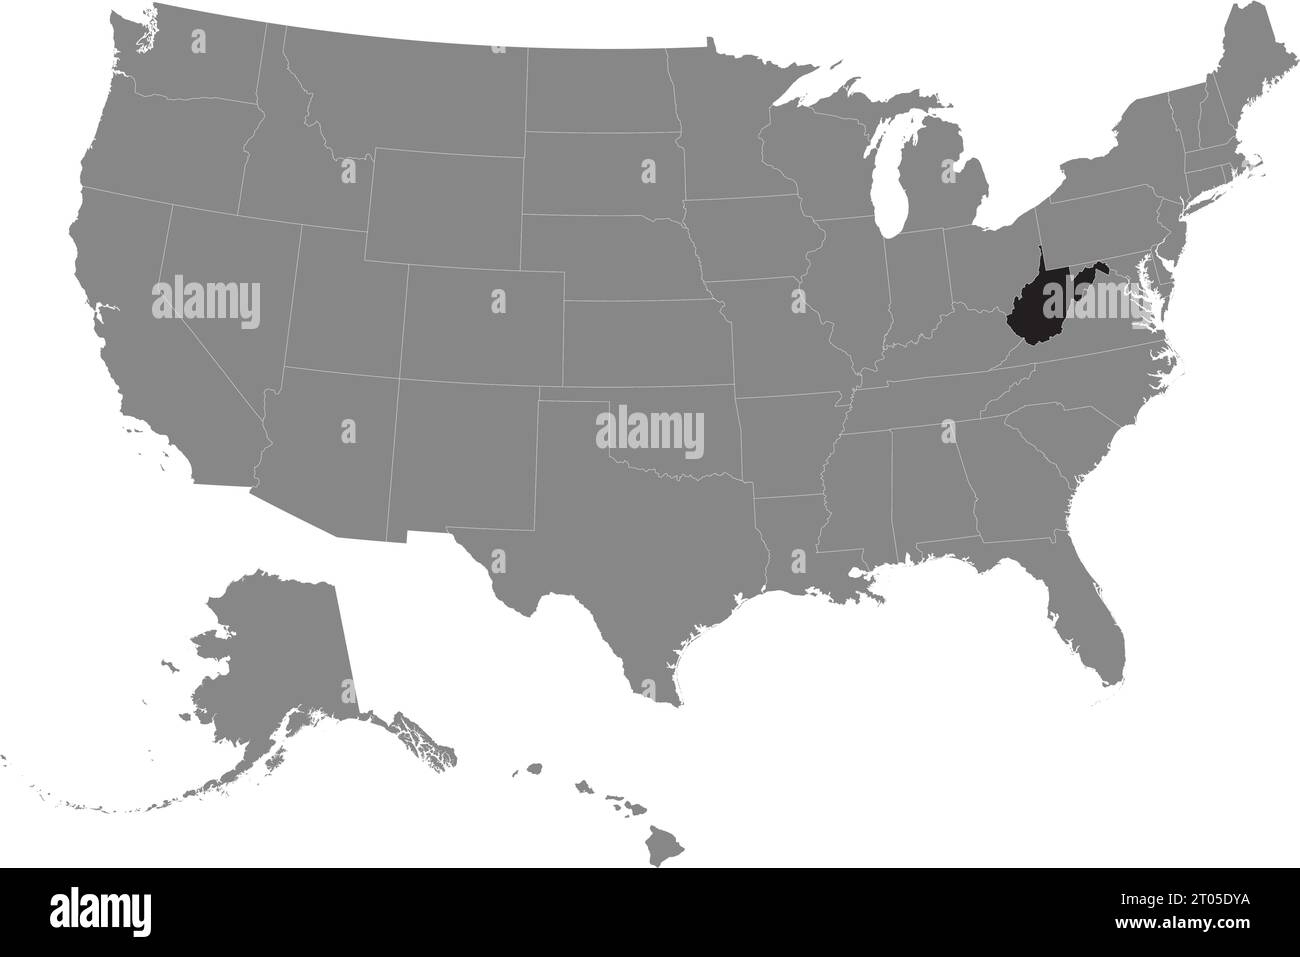 Carte fédérale CMJN noire de LA VIRGINIE-OCCIDENTALE à l'intérieur de la carte politique blanche et grise détaillée des États-Unis d'Amérique sur fond transparent Illustration de Vecteur